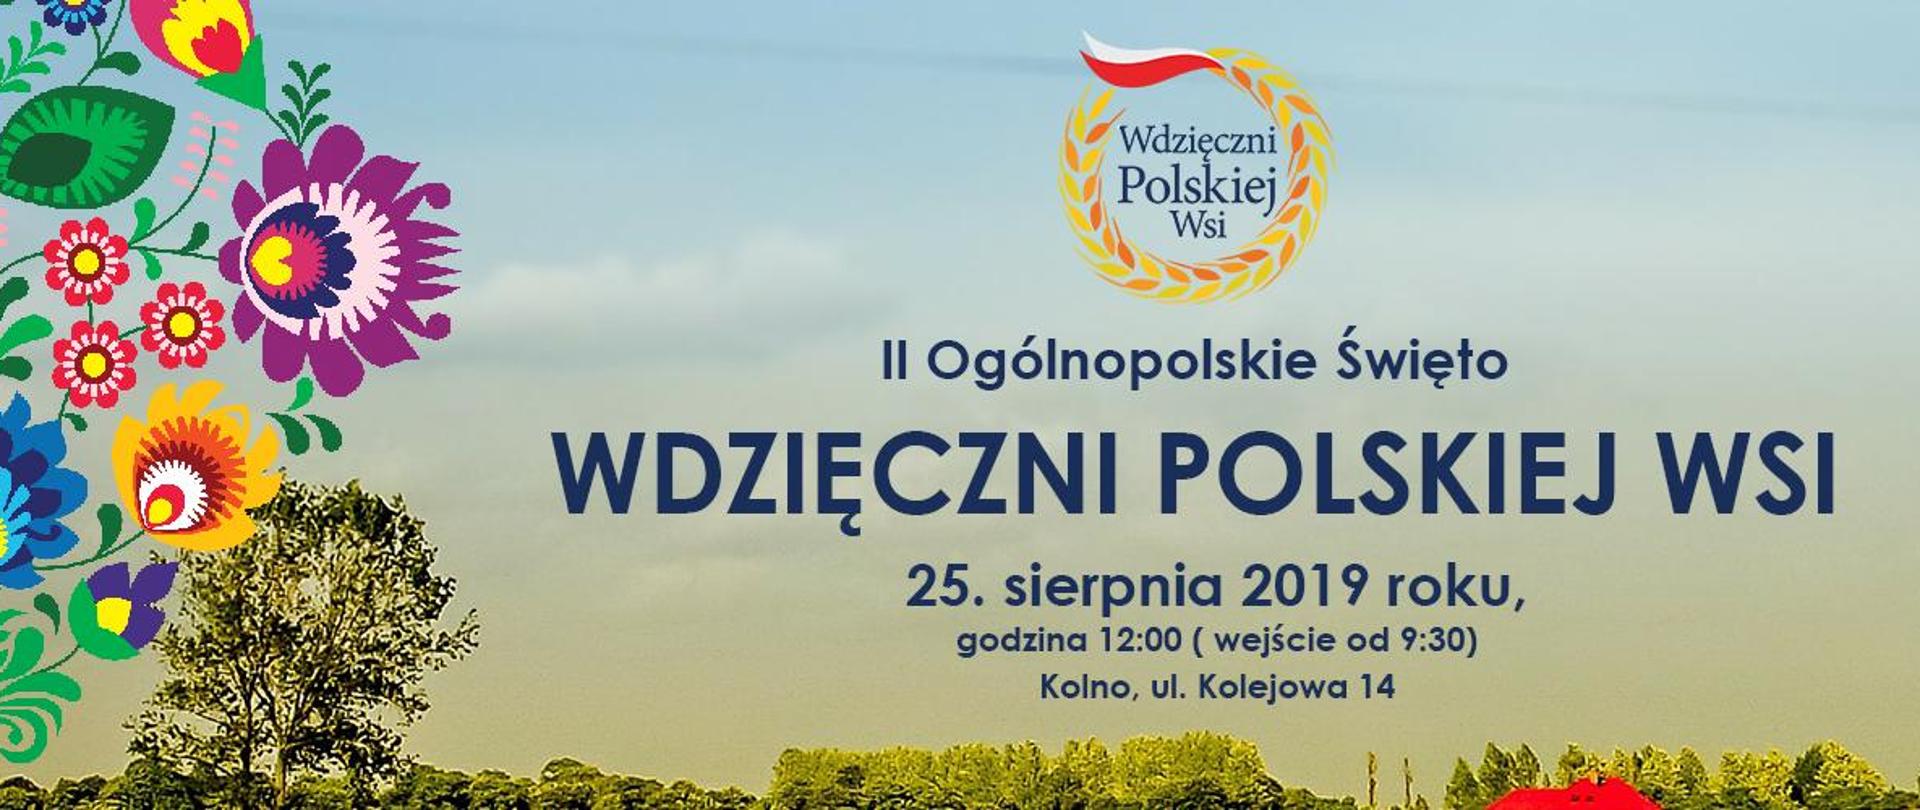 baner II Ogólnopolskie Święto Wdzięczni Polskiej Wsi